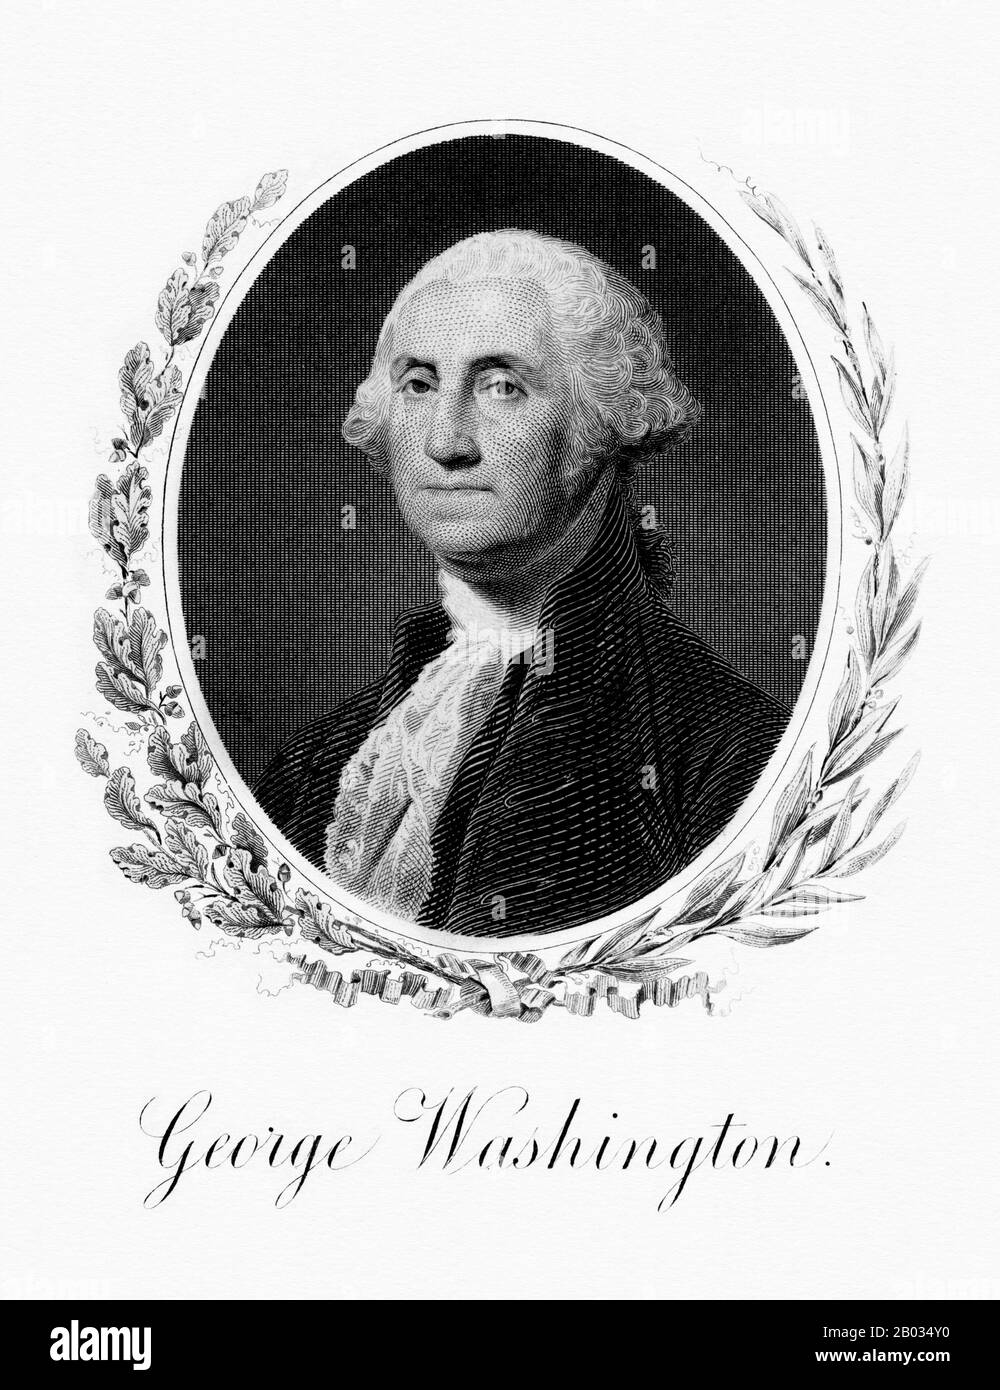 George Washington (dal 22 febbraio 1732 al 14 dicembre 1799) è stato il primo presidente degli Stati Uniti (1789–97), comandante in capo dell'esercito continentale durante la guerra rivoluzionaria americana e uno dei padri Fondatori degli Stati Uniti. Ha presieduto la Convenzione che ha redatto l'attuale Costituzione degli Stati Uniti e durante la sua vita è stato chiamato il 'padre del suo paese'. Foto Stock